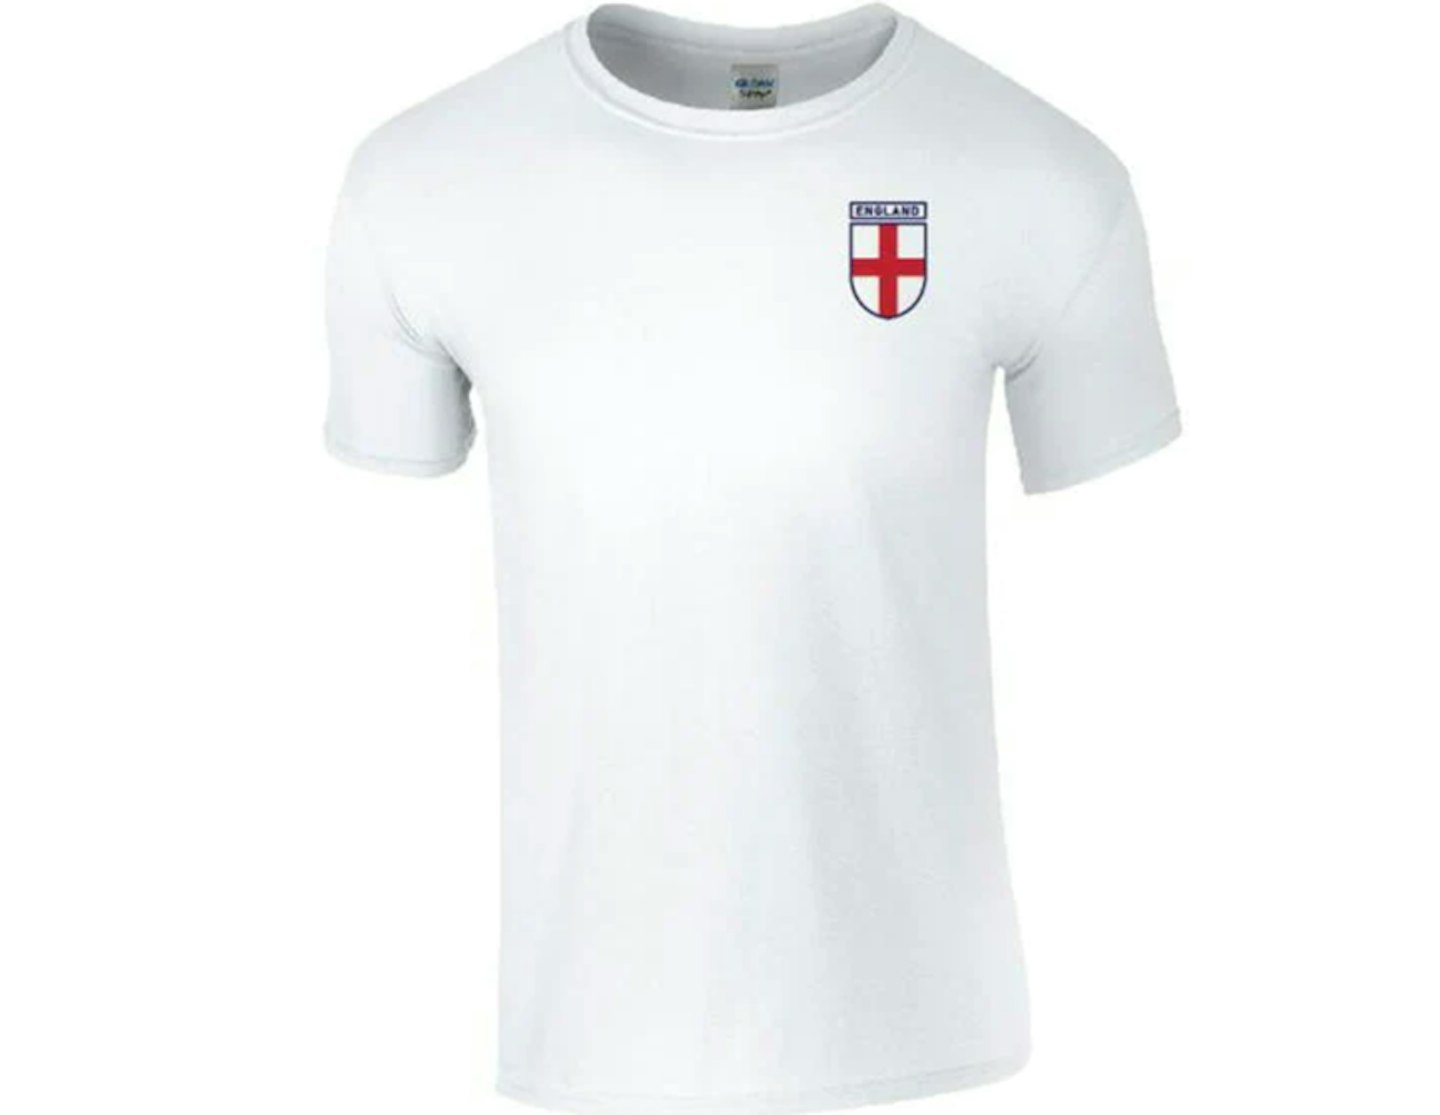 England Crest T Shirt